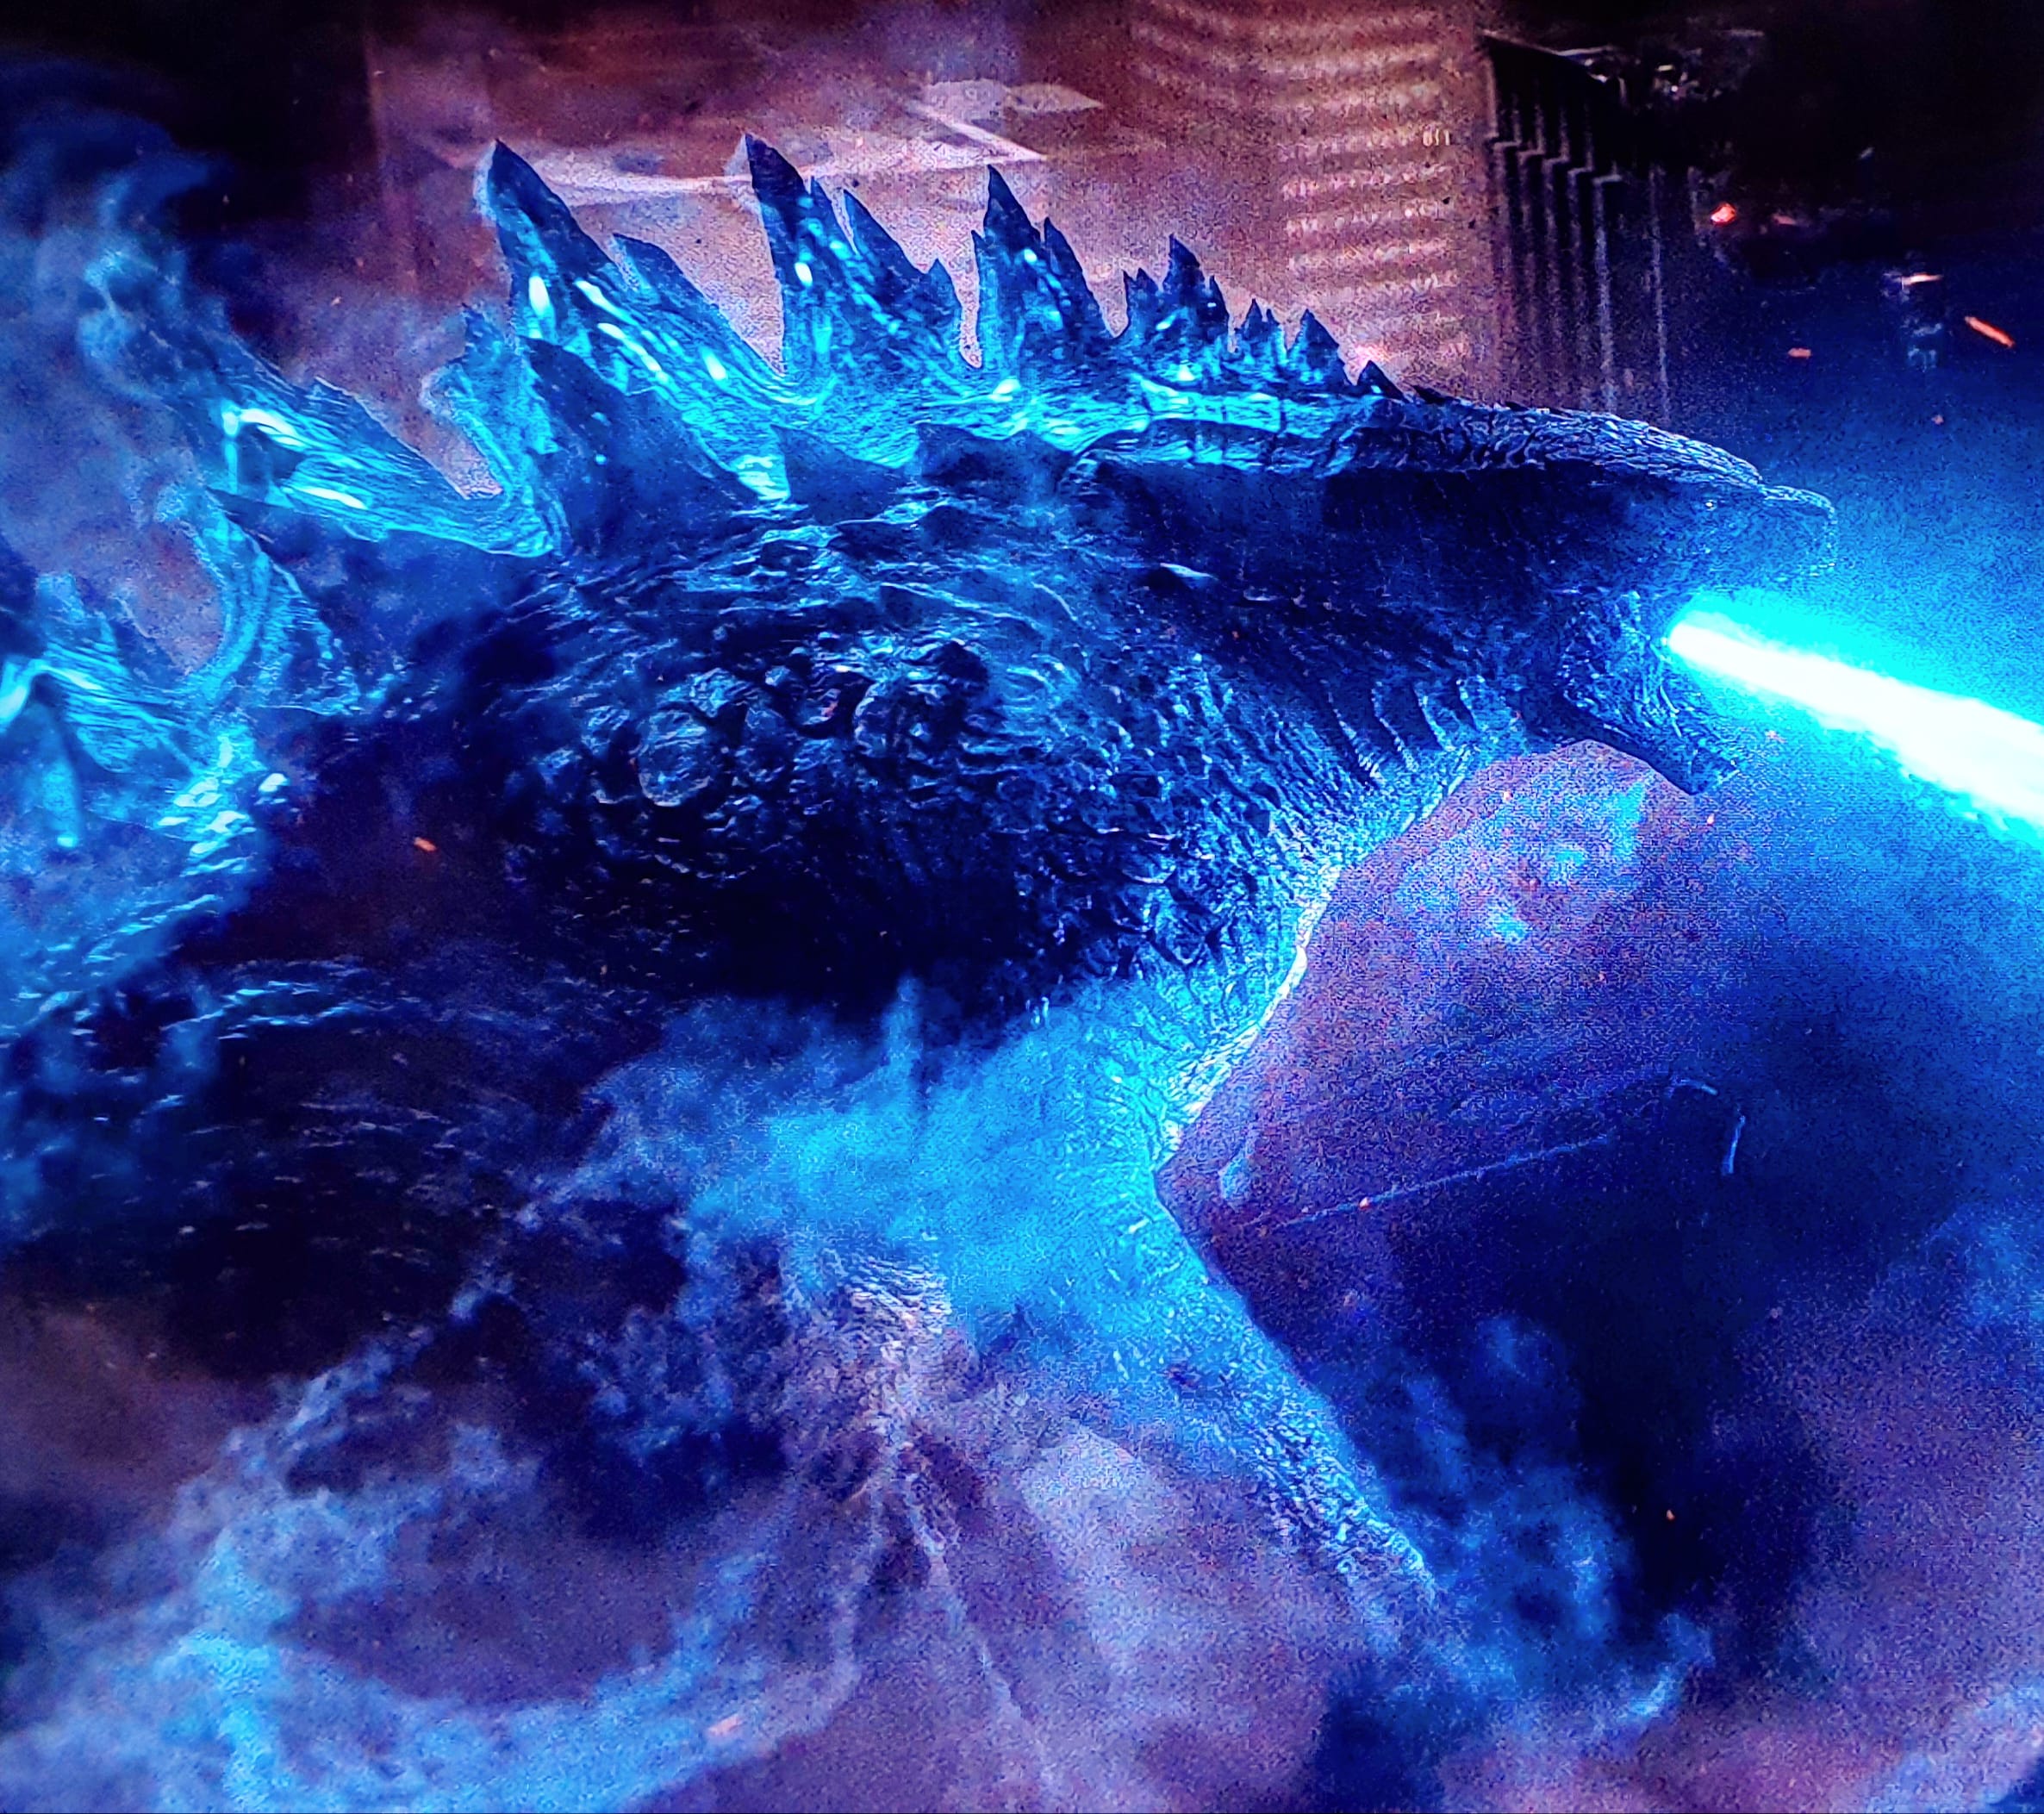 Godzilla 2014 Movie Stills images